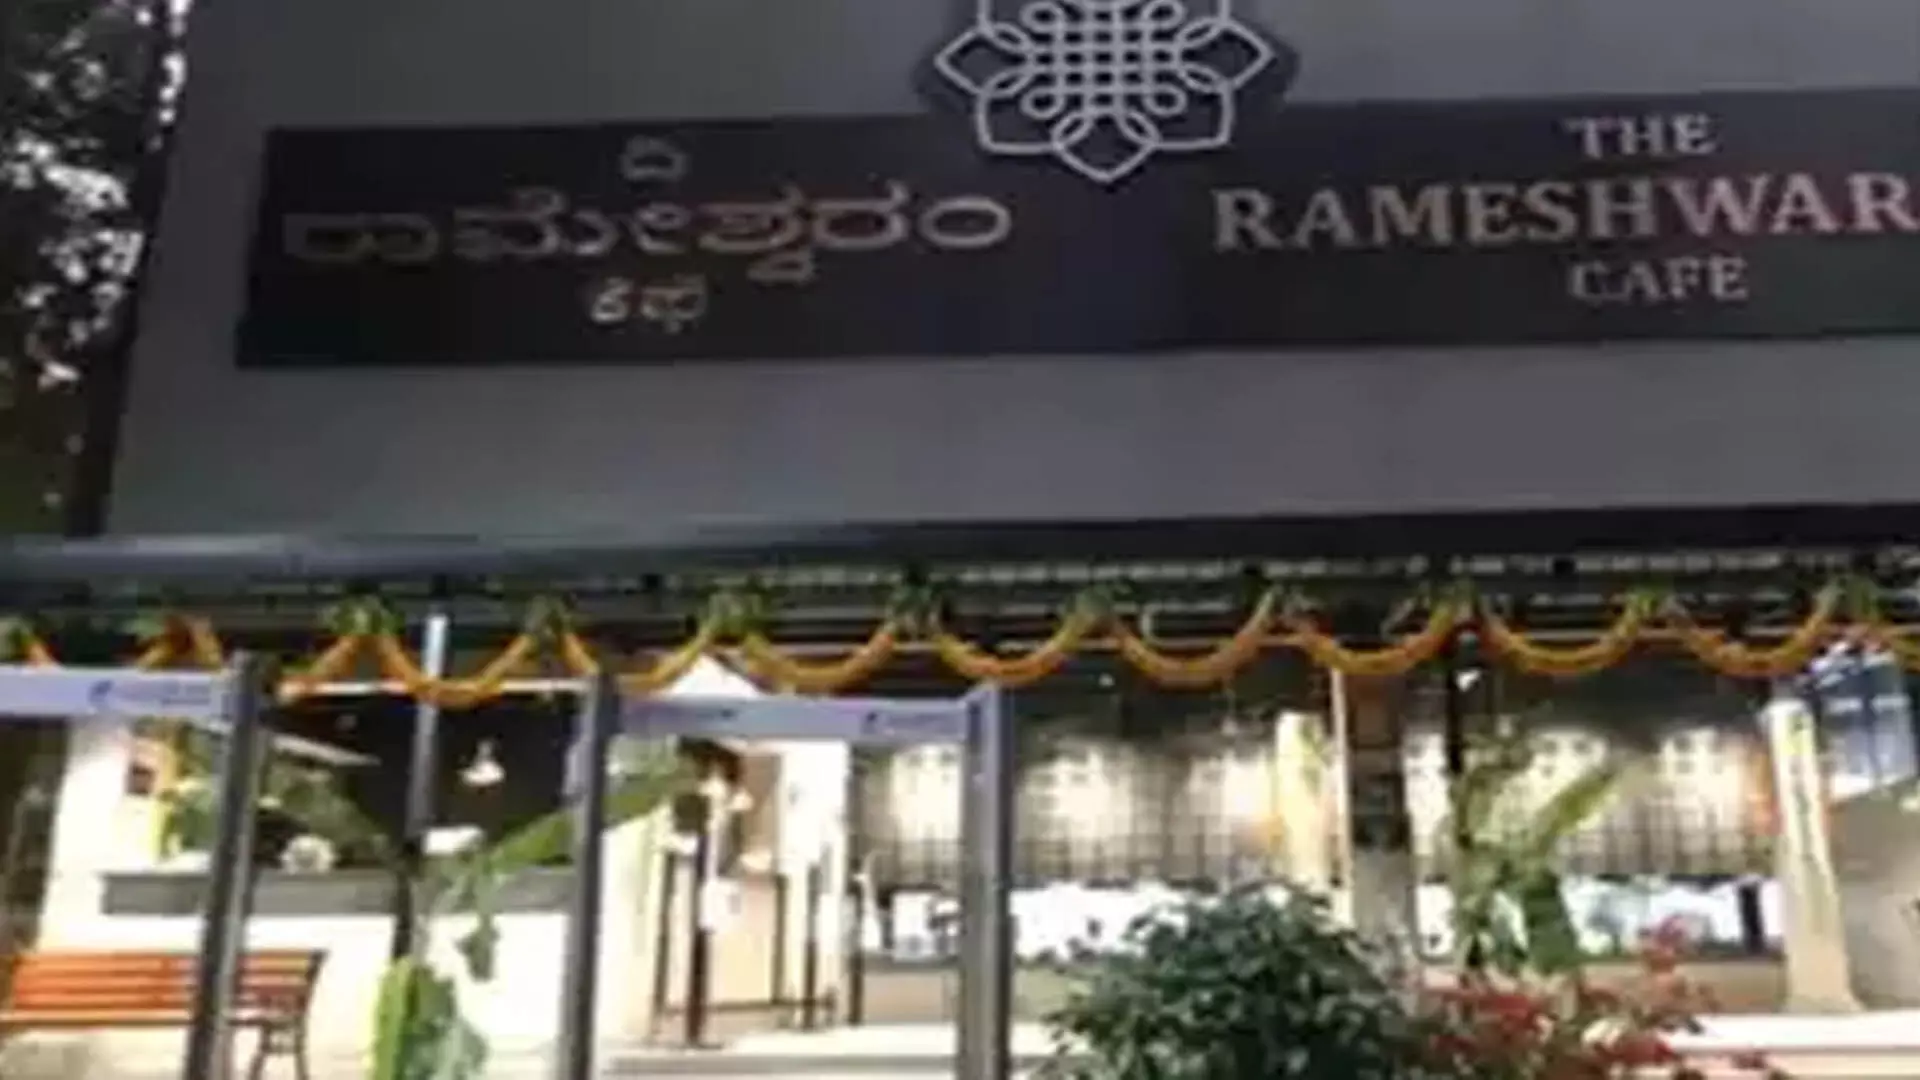 आईईडी विस्फोट के 8 दिन बाद बेंगलुरु का रामेश्वरम कैफे  खुला